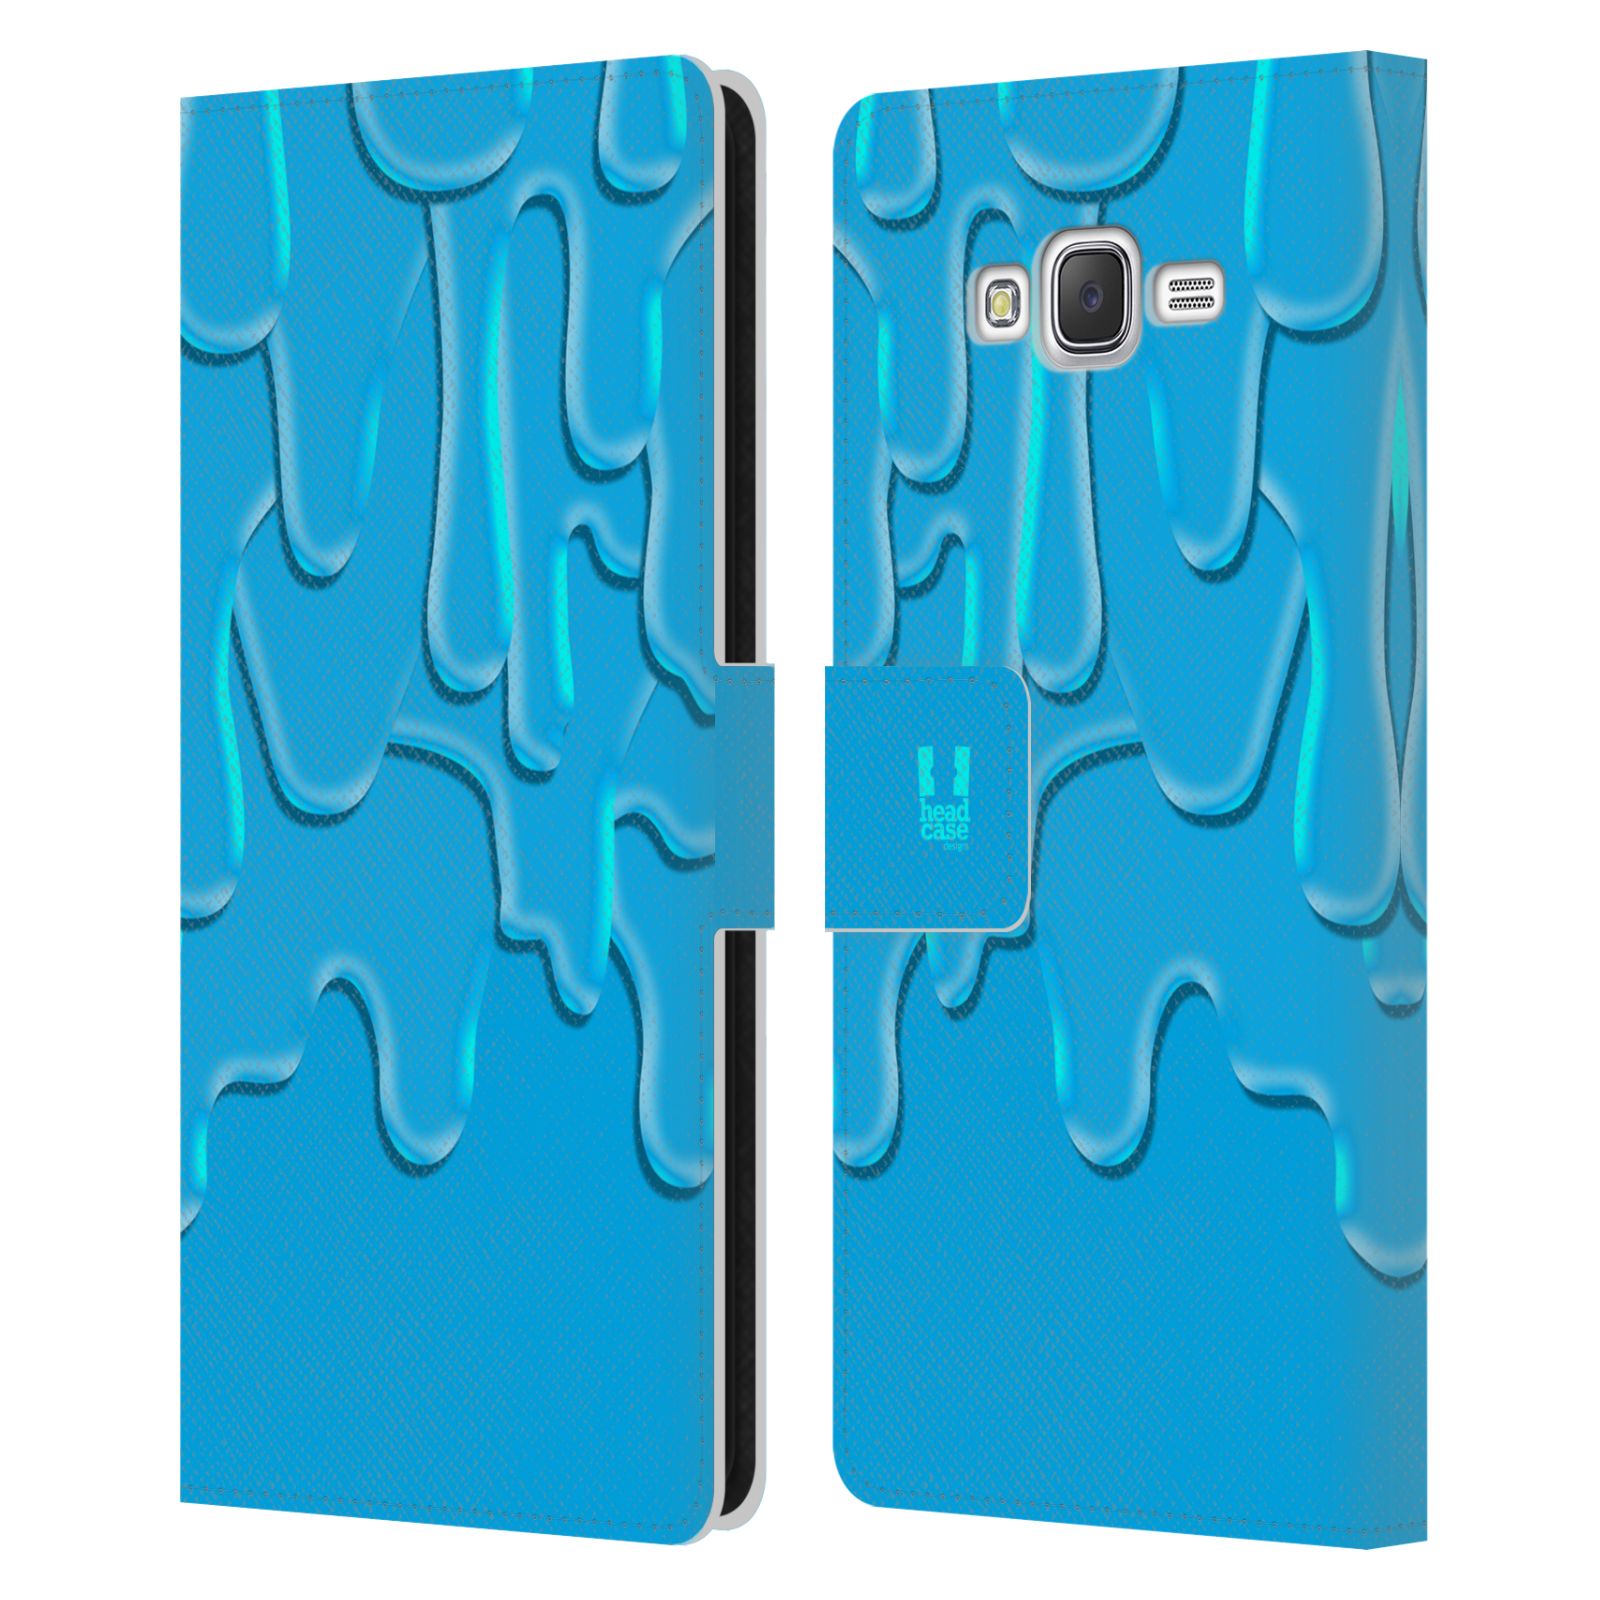 HEAD CASE Flipové pouzdro pro mobil Samsung Galaxy J7, J700 ZÁPLAVA BARVA tyrkysová modrá